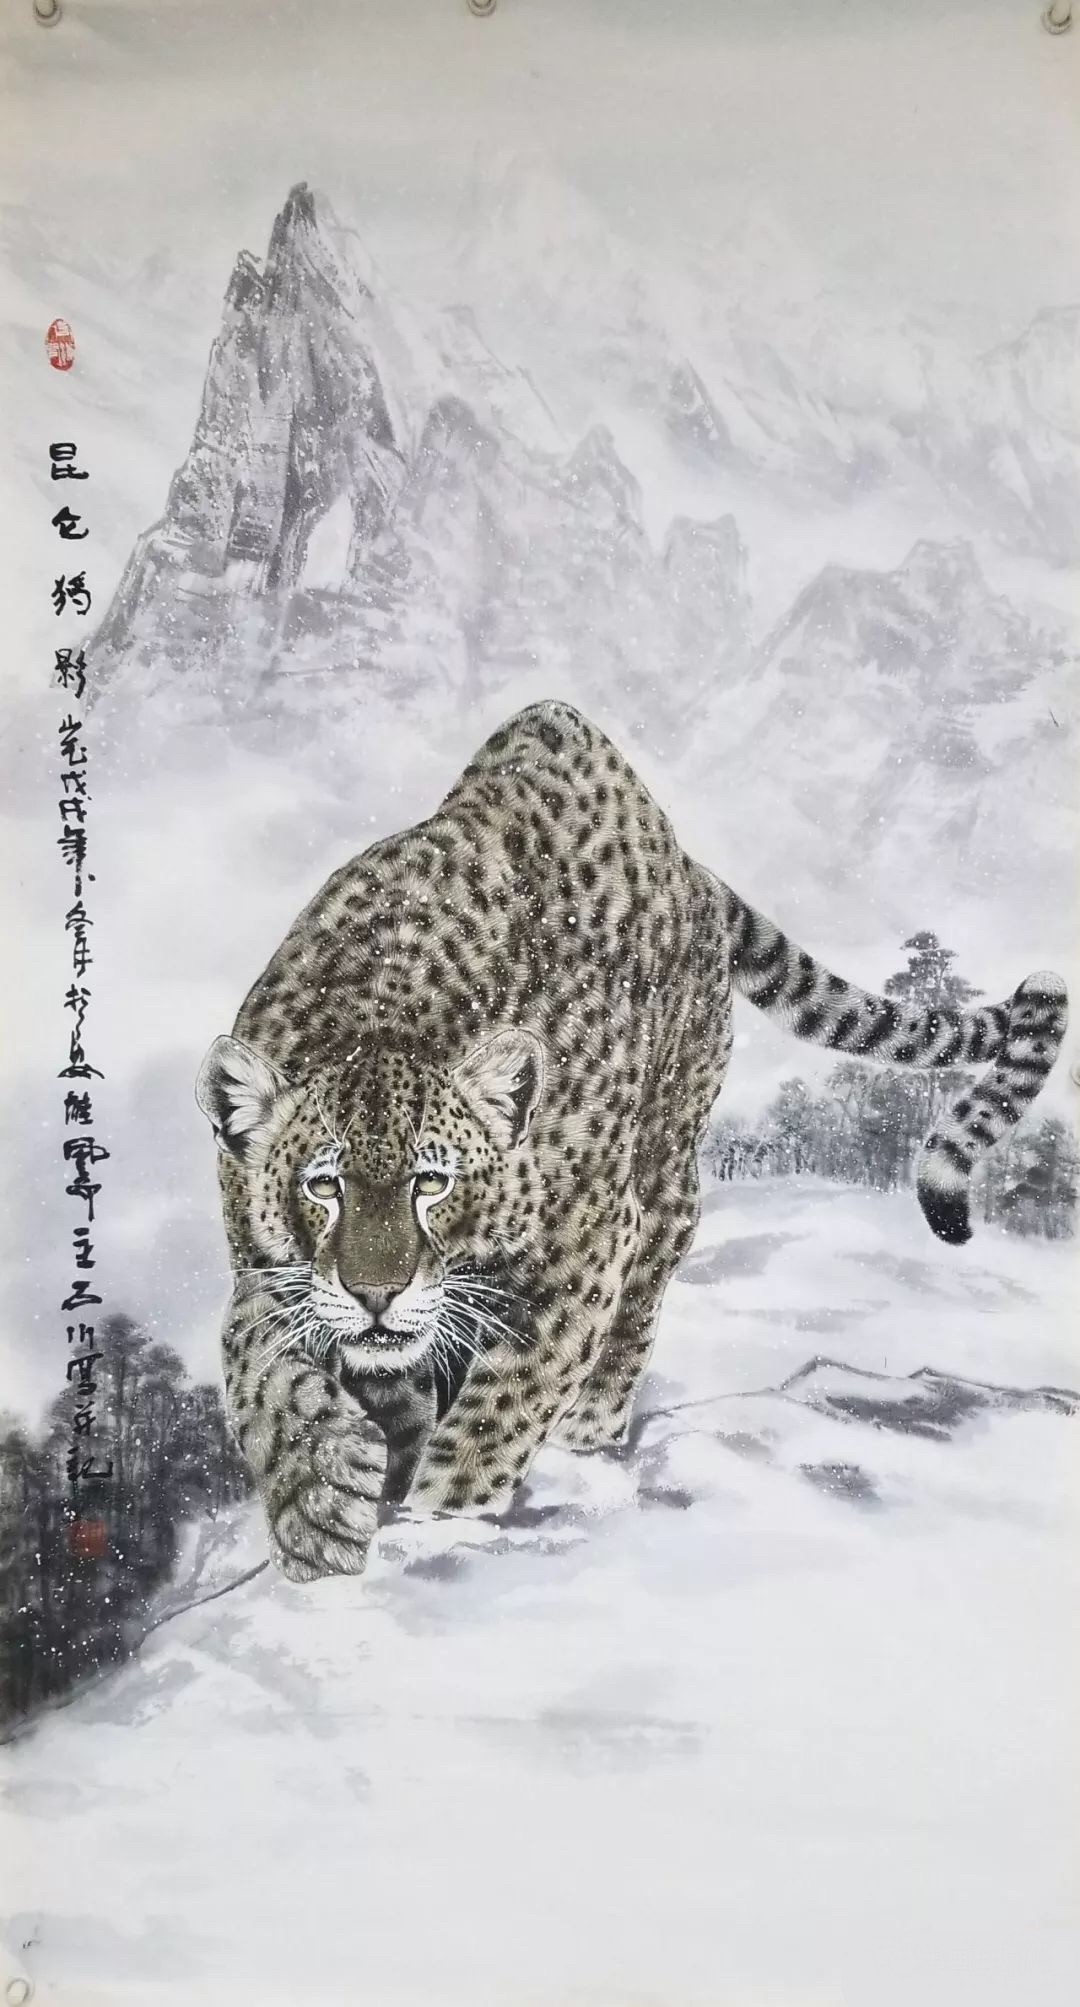 石川画家 老虎图片